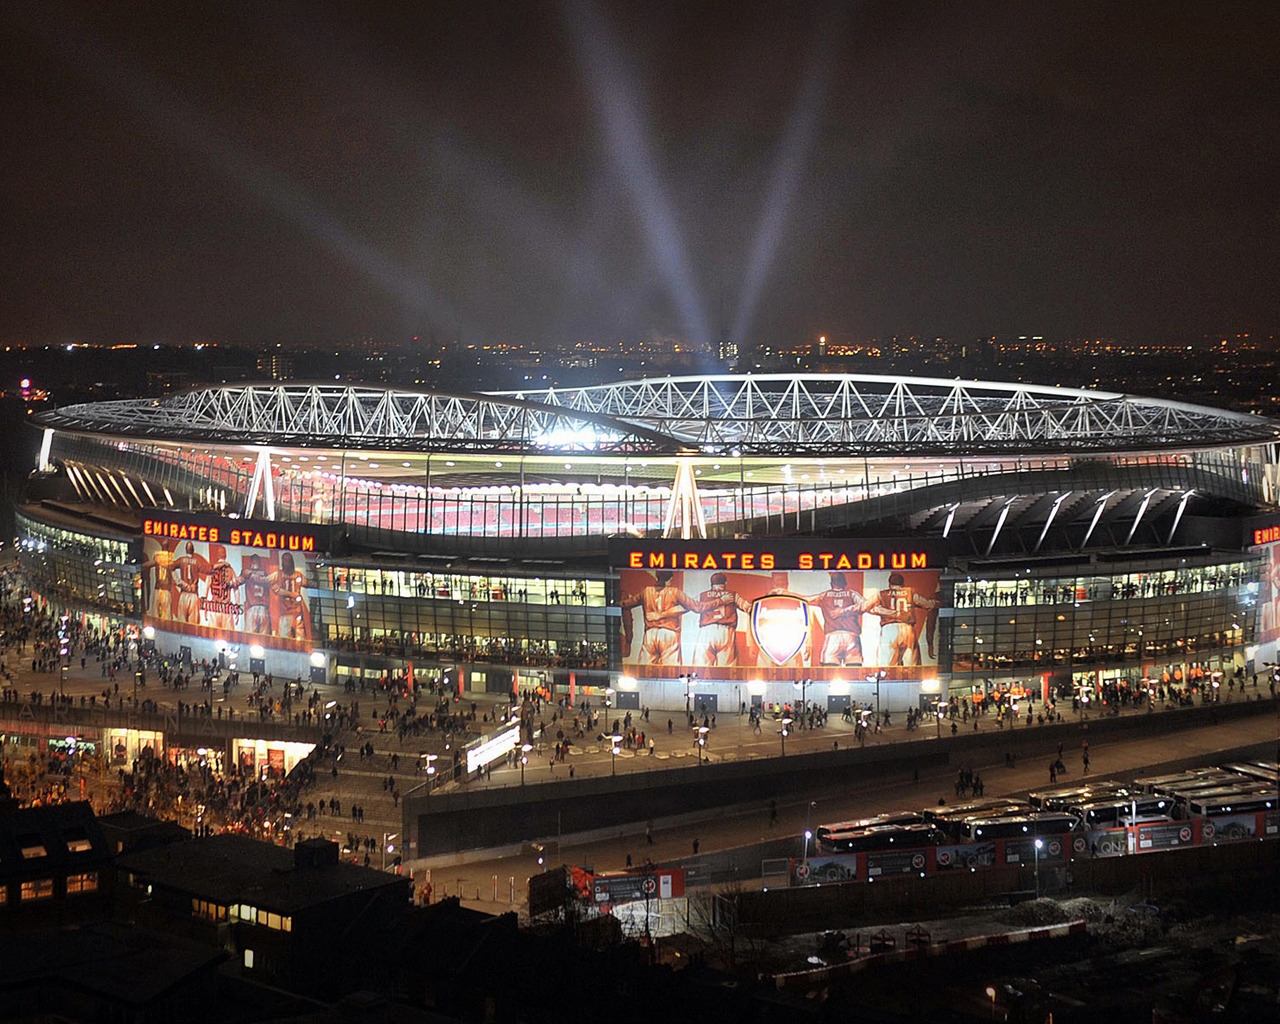 Emirates Stadium for 1280 x 1024 resolution